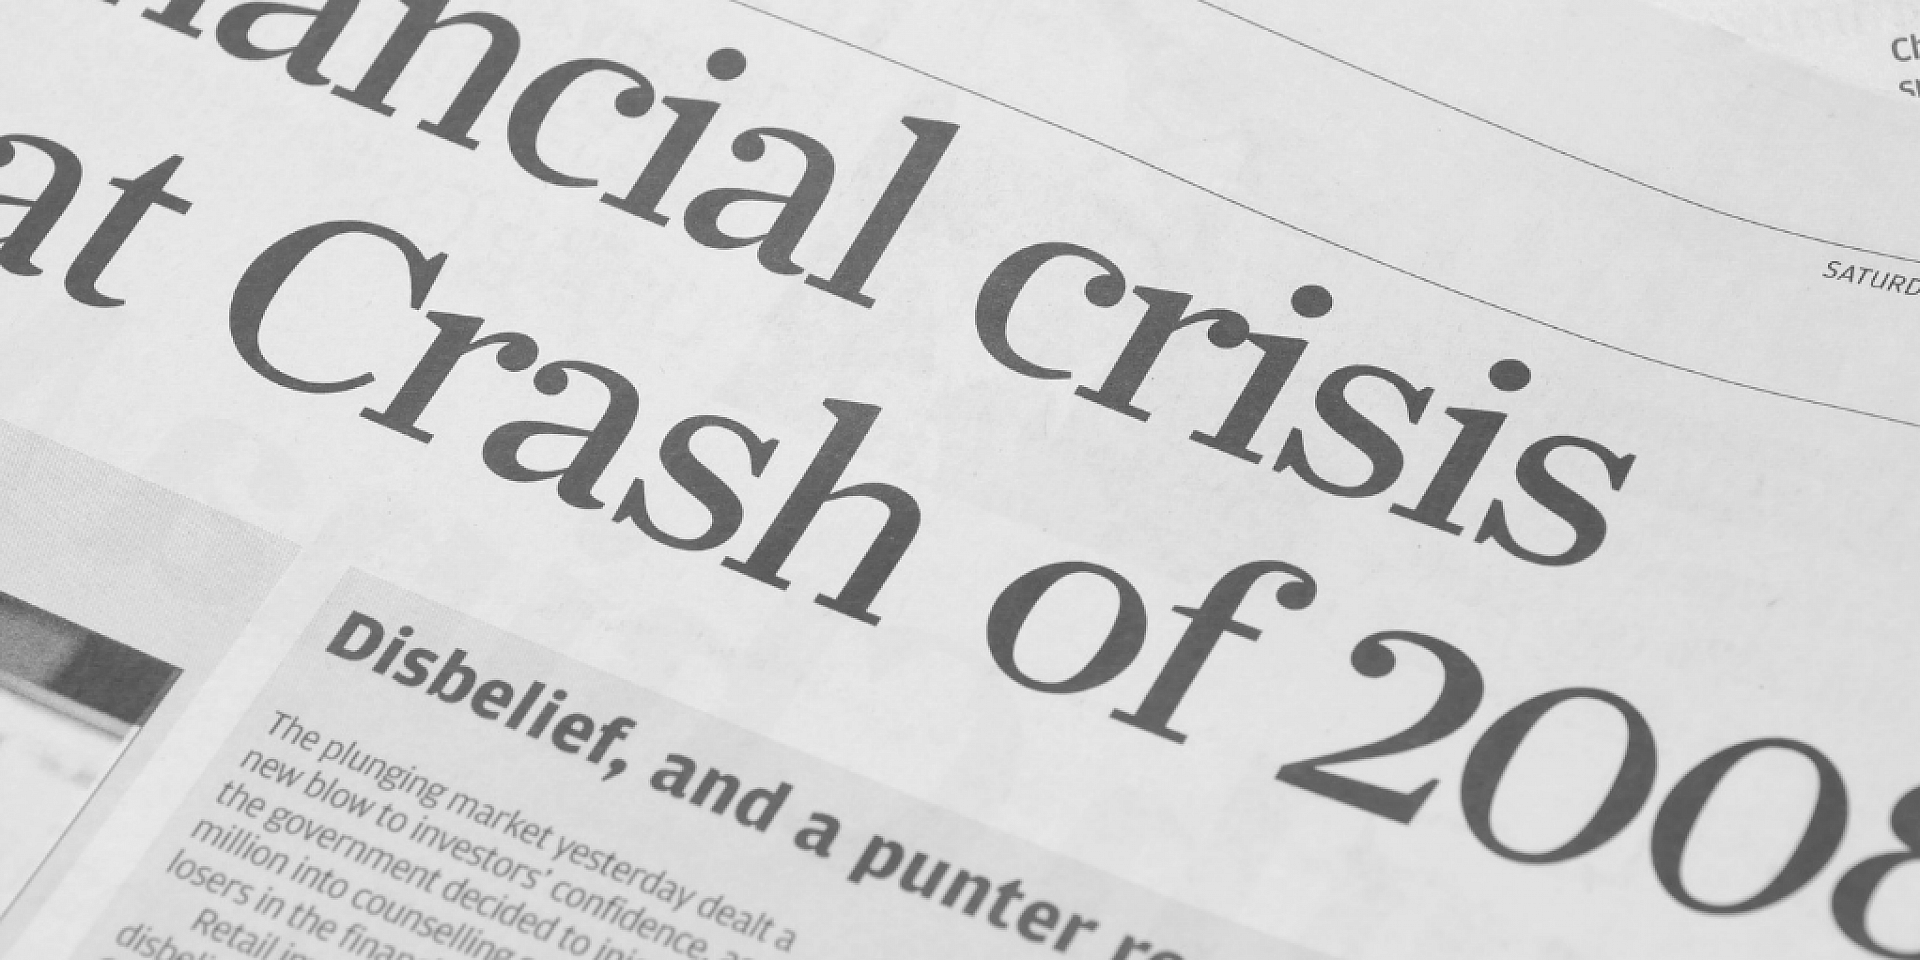 Coupure de presse avec le titre "Crise financière... Crash de 2008".